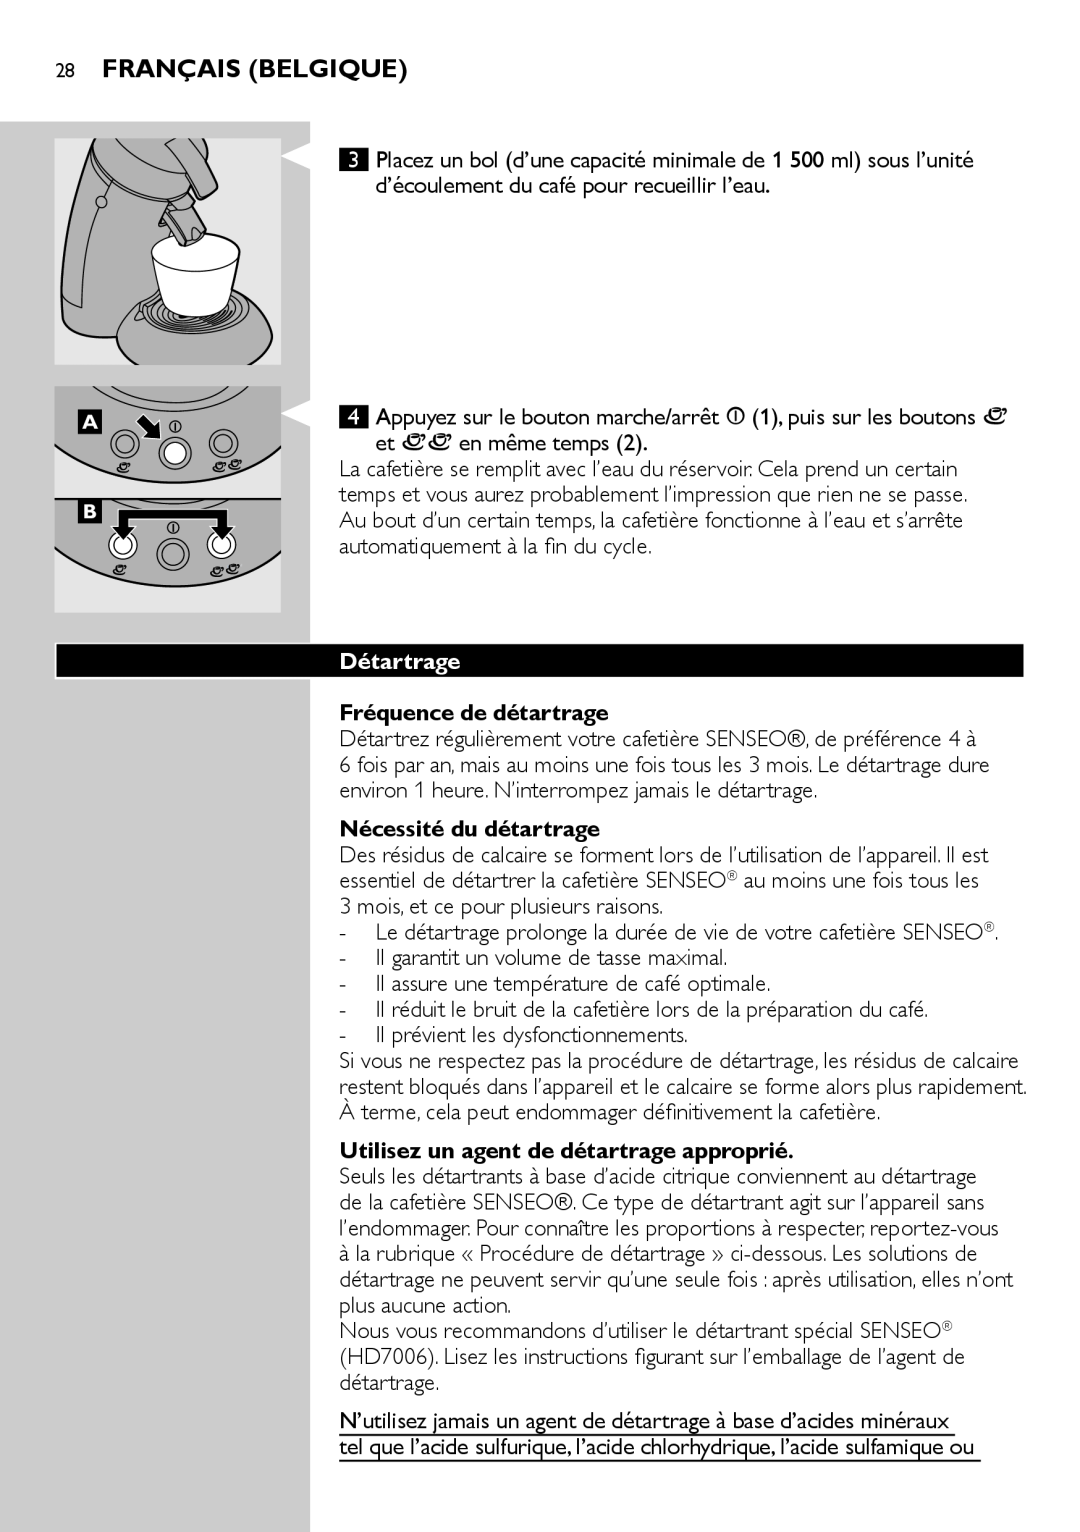 Philips HD7805 manual Français Belgique, Détartrage, Fréquence de détartrage, Nécessité du détartrage 